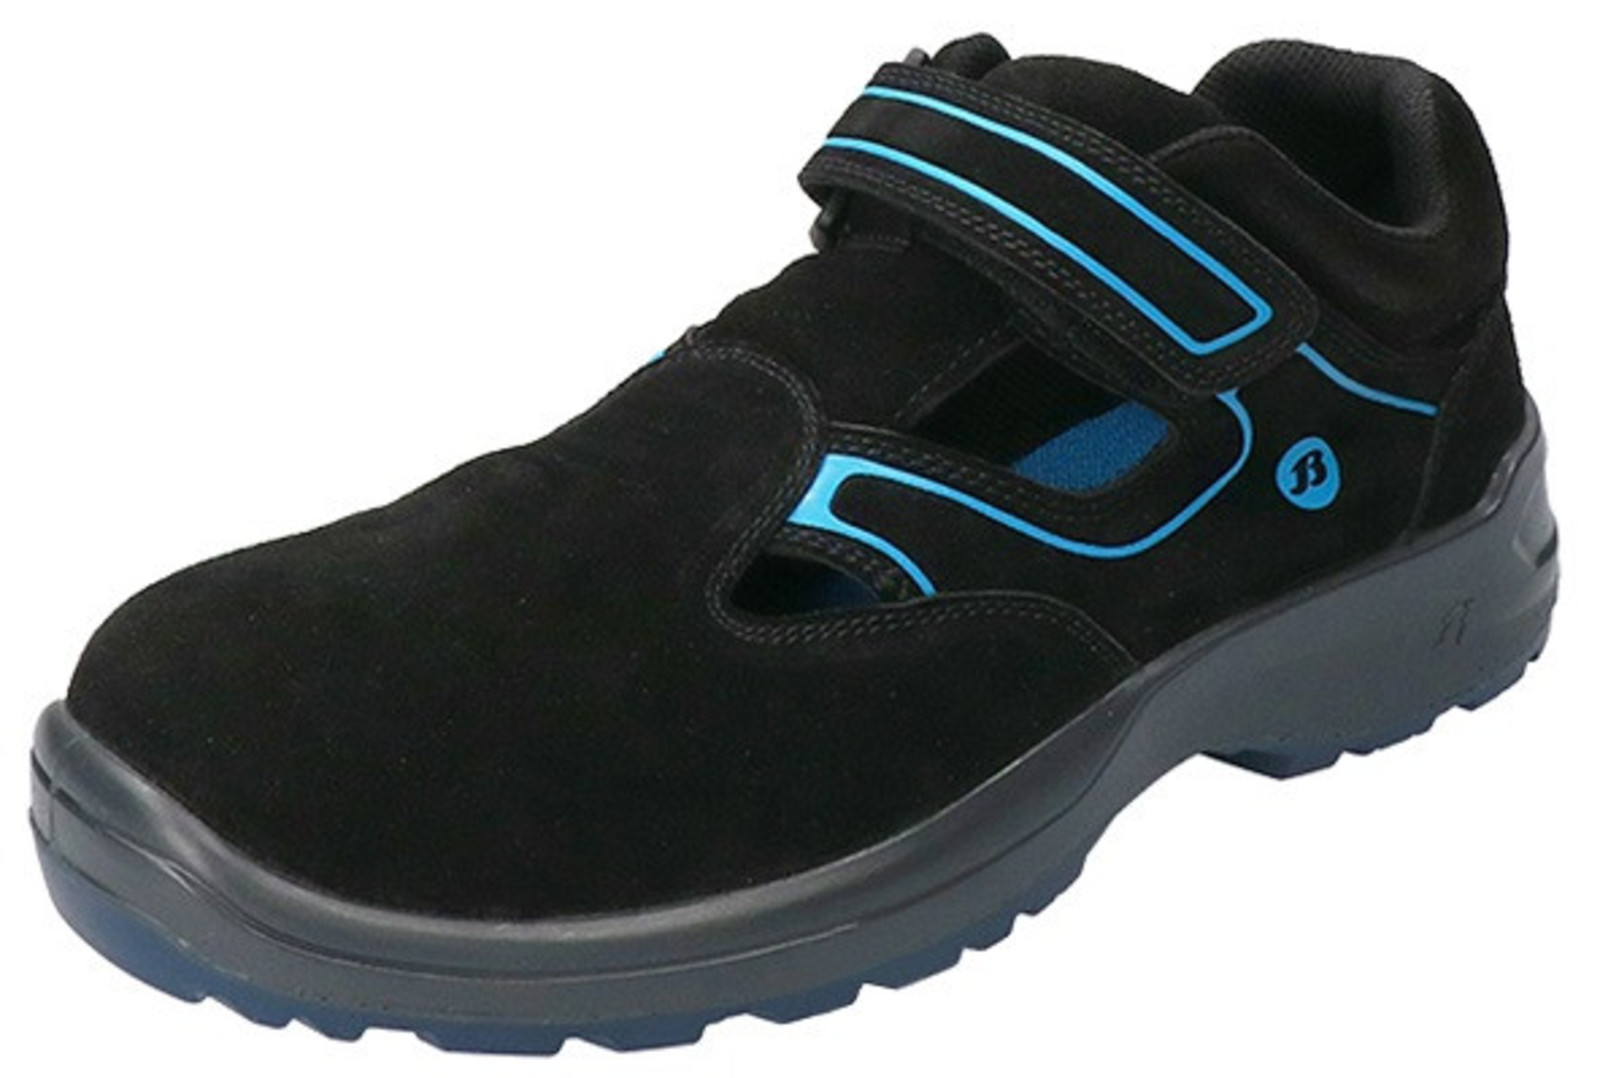 Bezpečnostné sandále Baťa Falcon ESD S1 - veľkosť: 40, farba: čierna